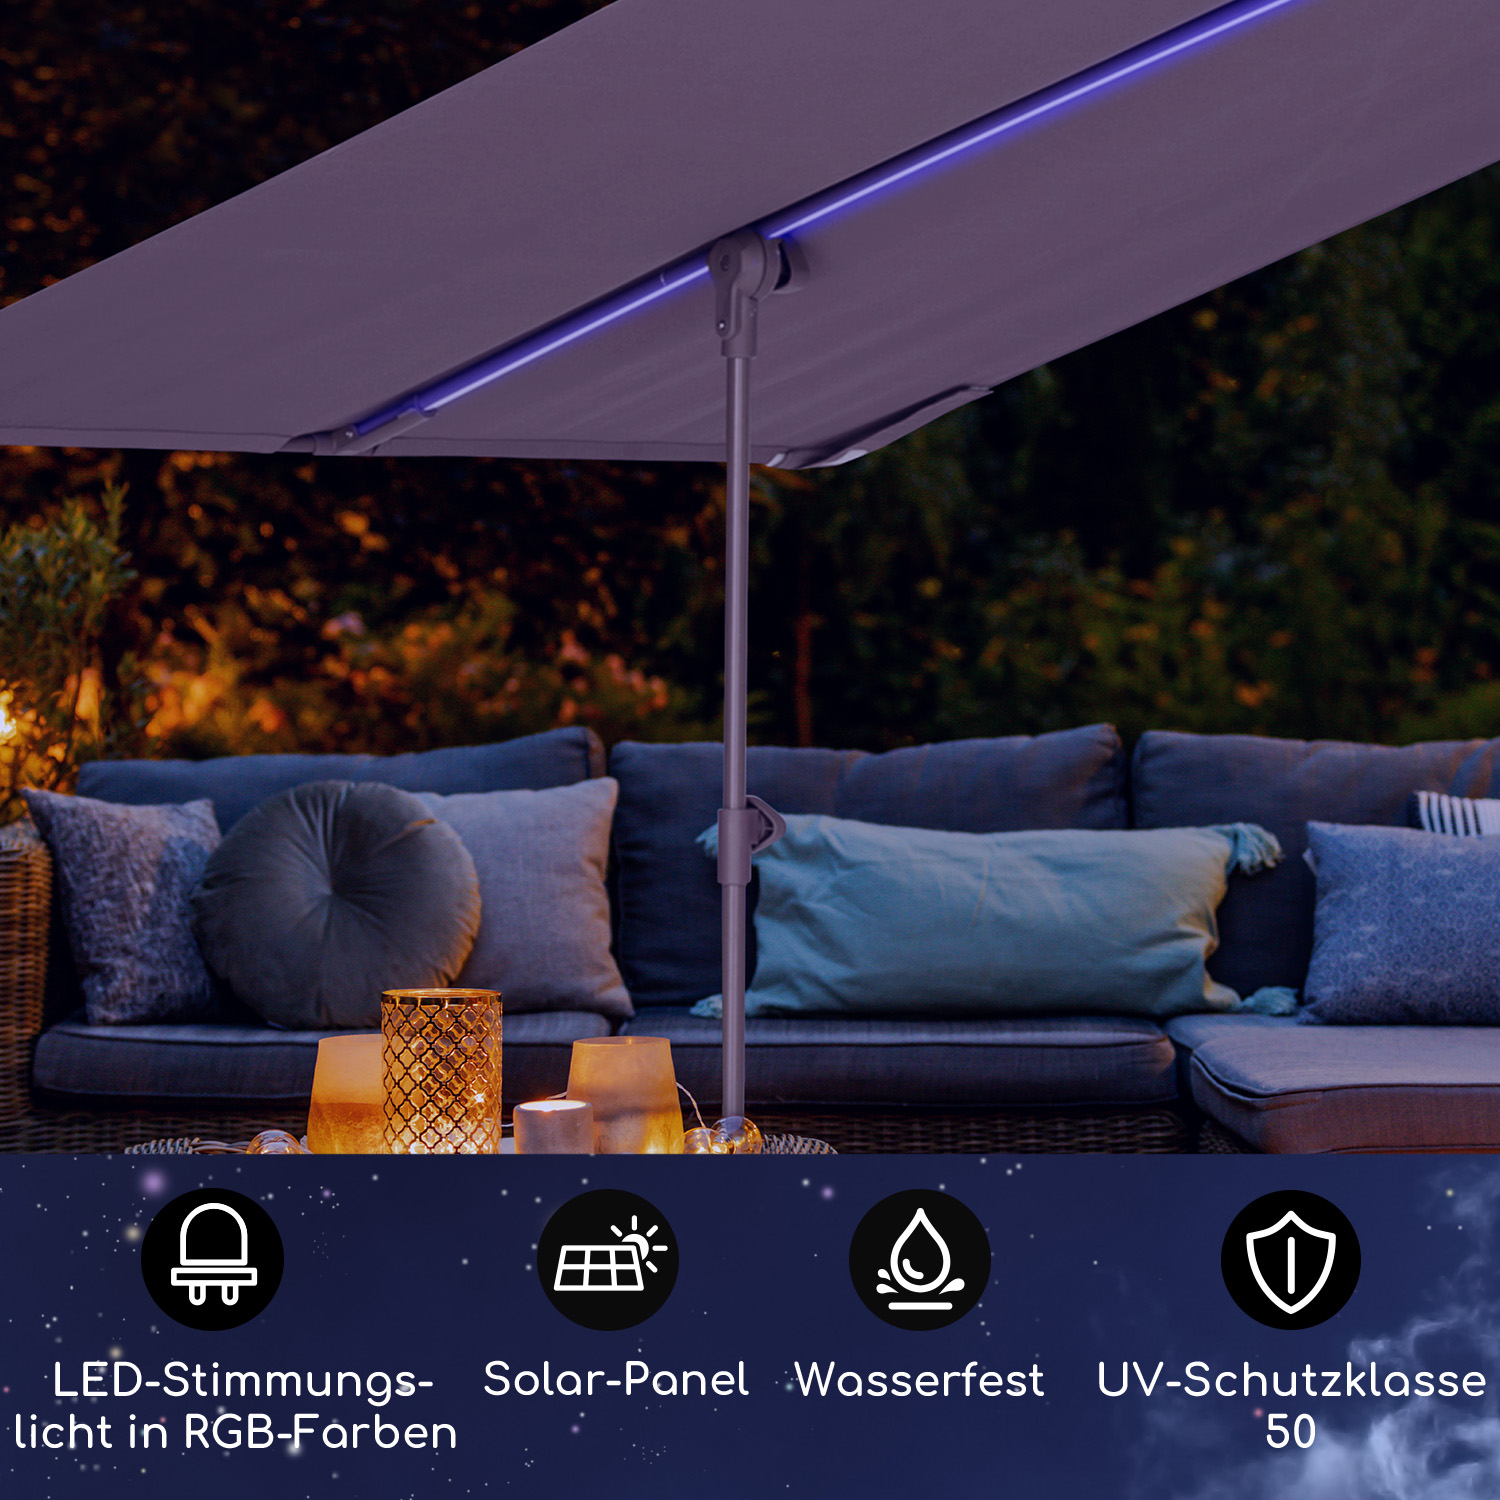 with BLUMFELDT LED Sichtschutz, Taupe Flex Shade Parasol